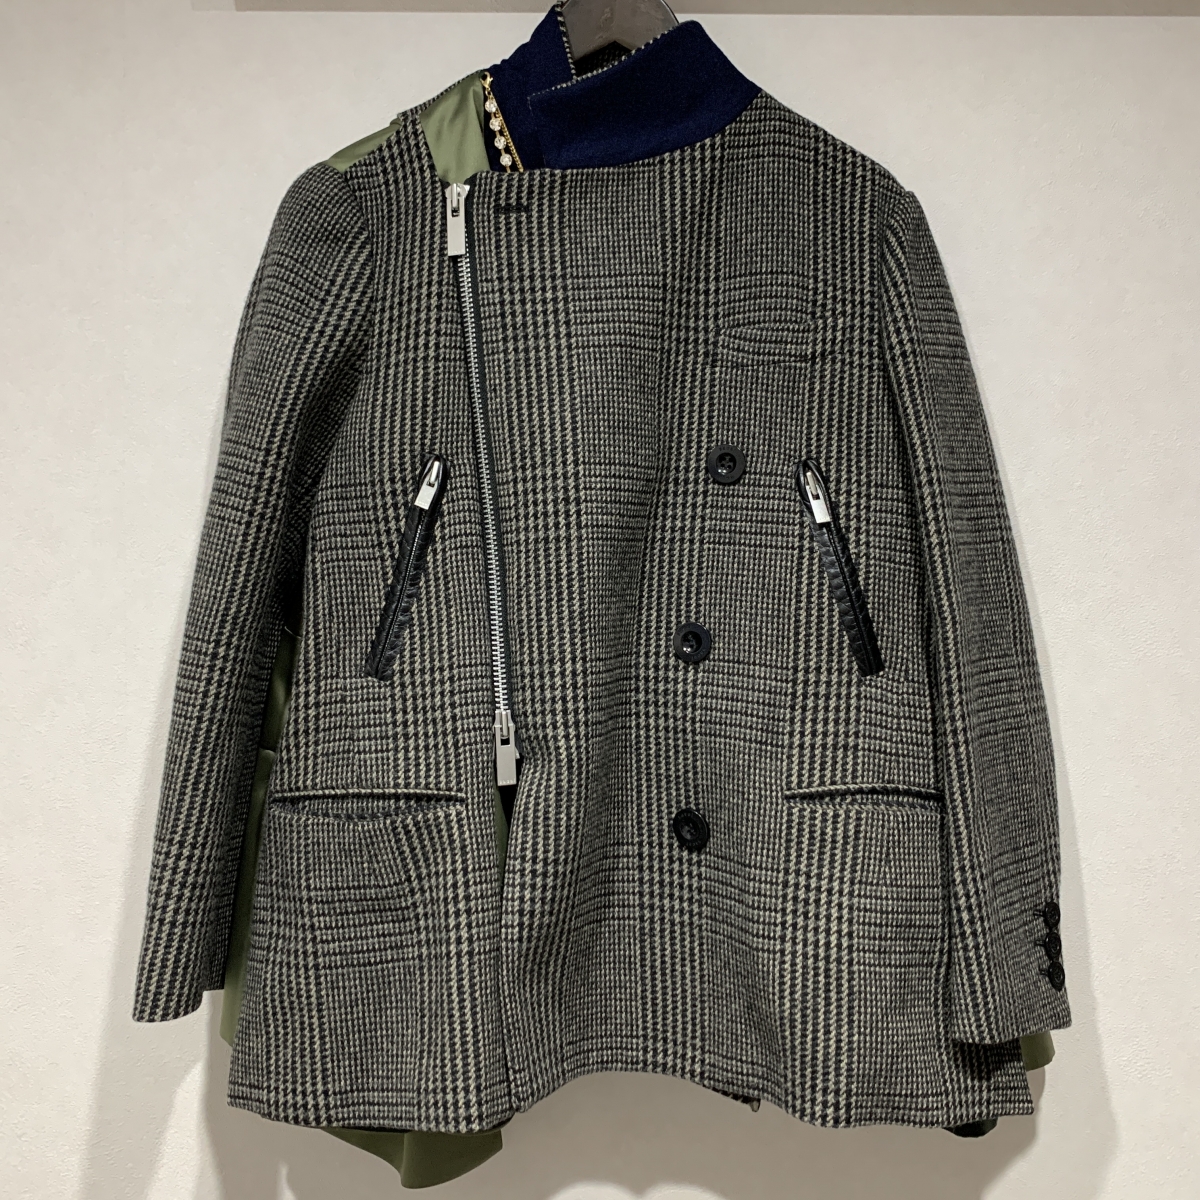 サカイの20AW グレンチェック パールネックレス付き ドッキングジャケット 20-05330の買取実績です。